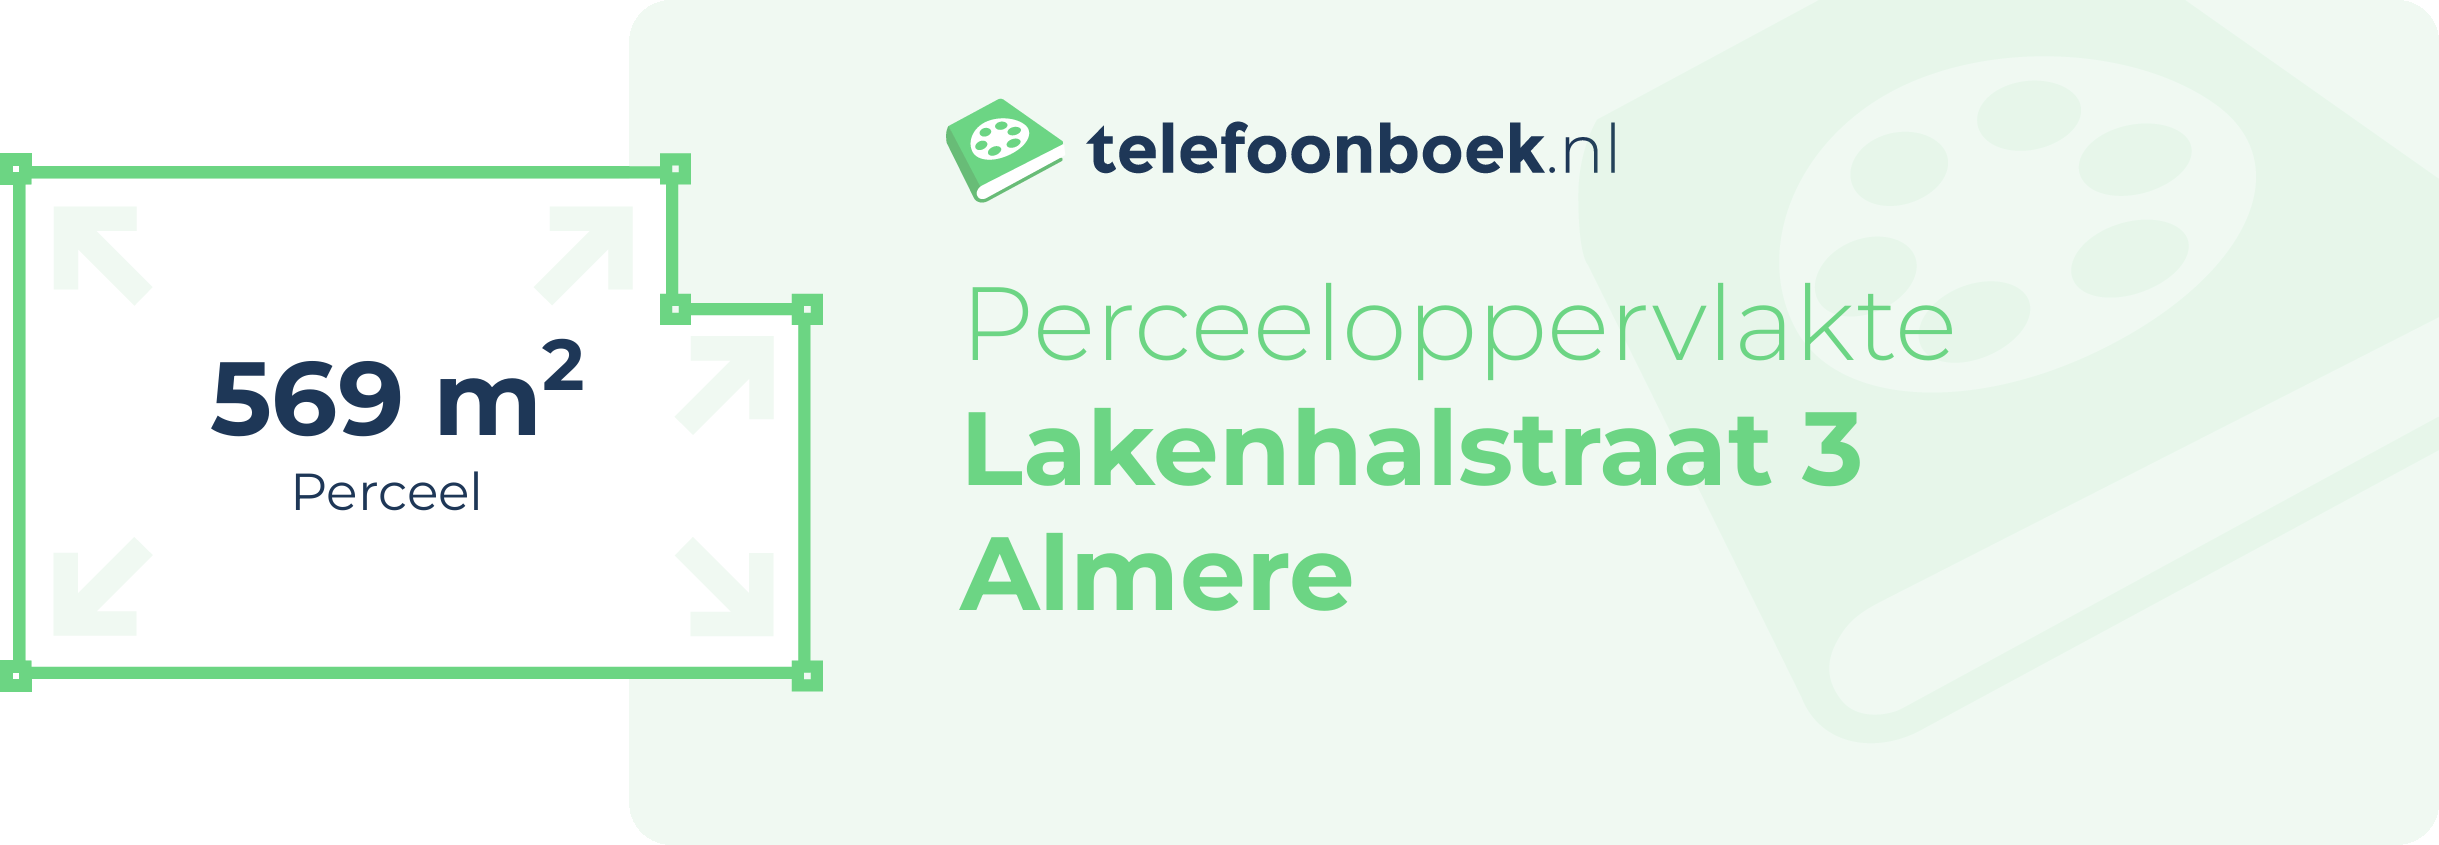 Perceeloppervlakte Lakenhalstraat 3 Almere